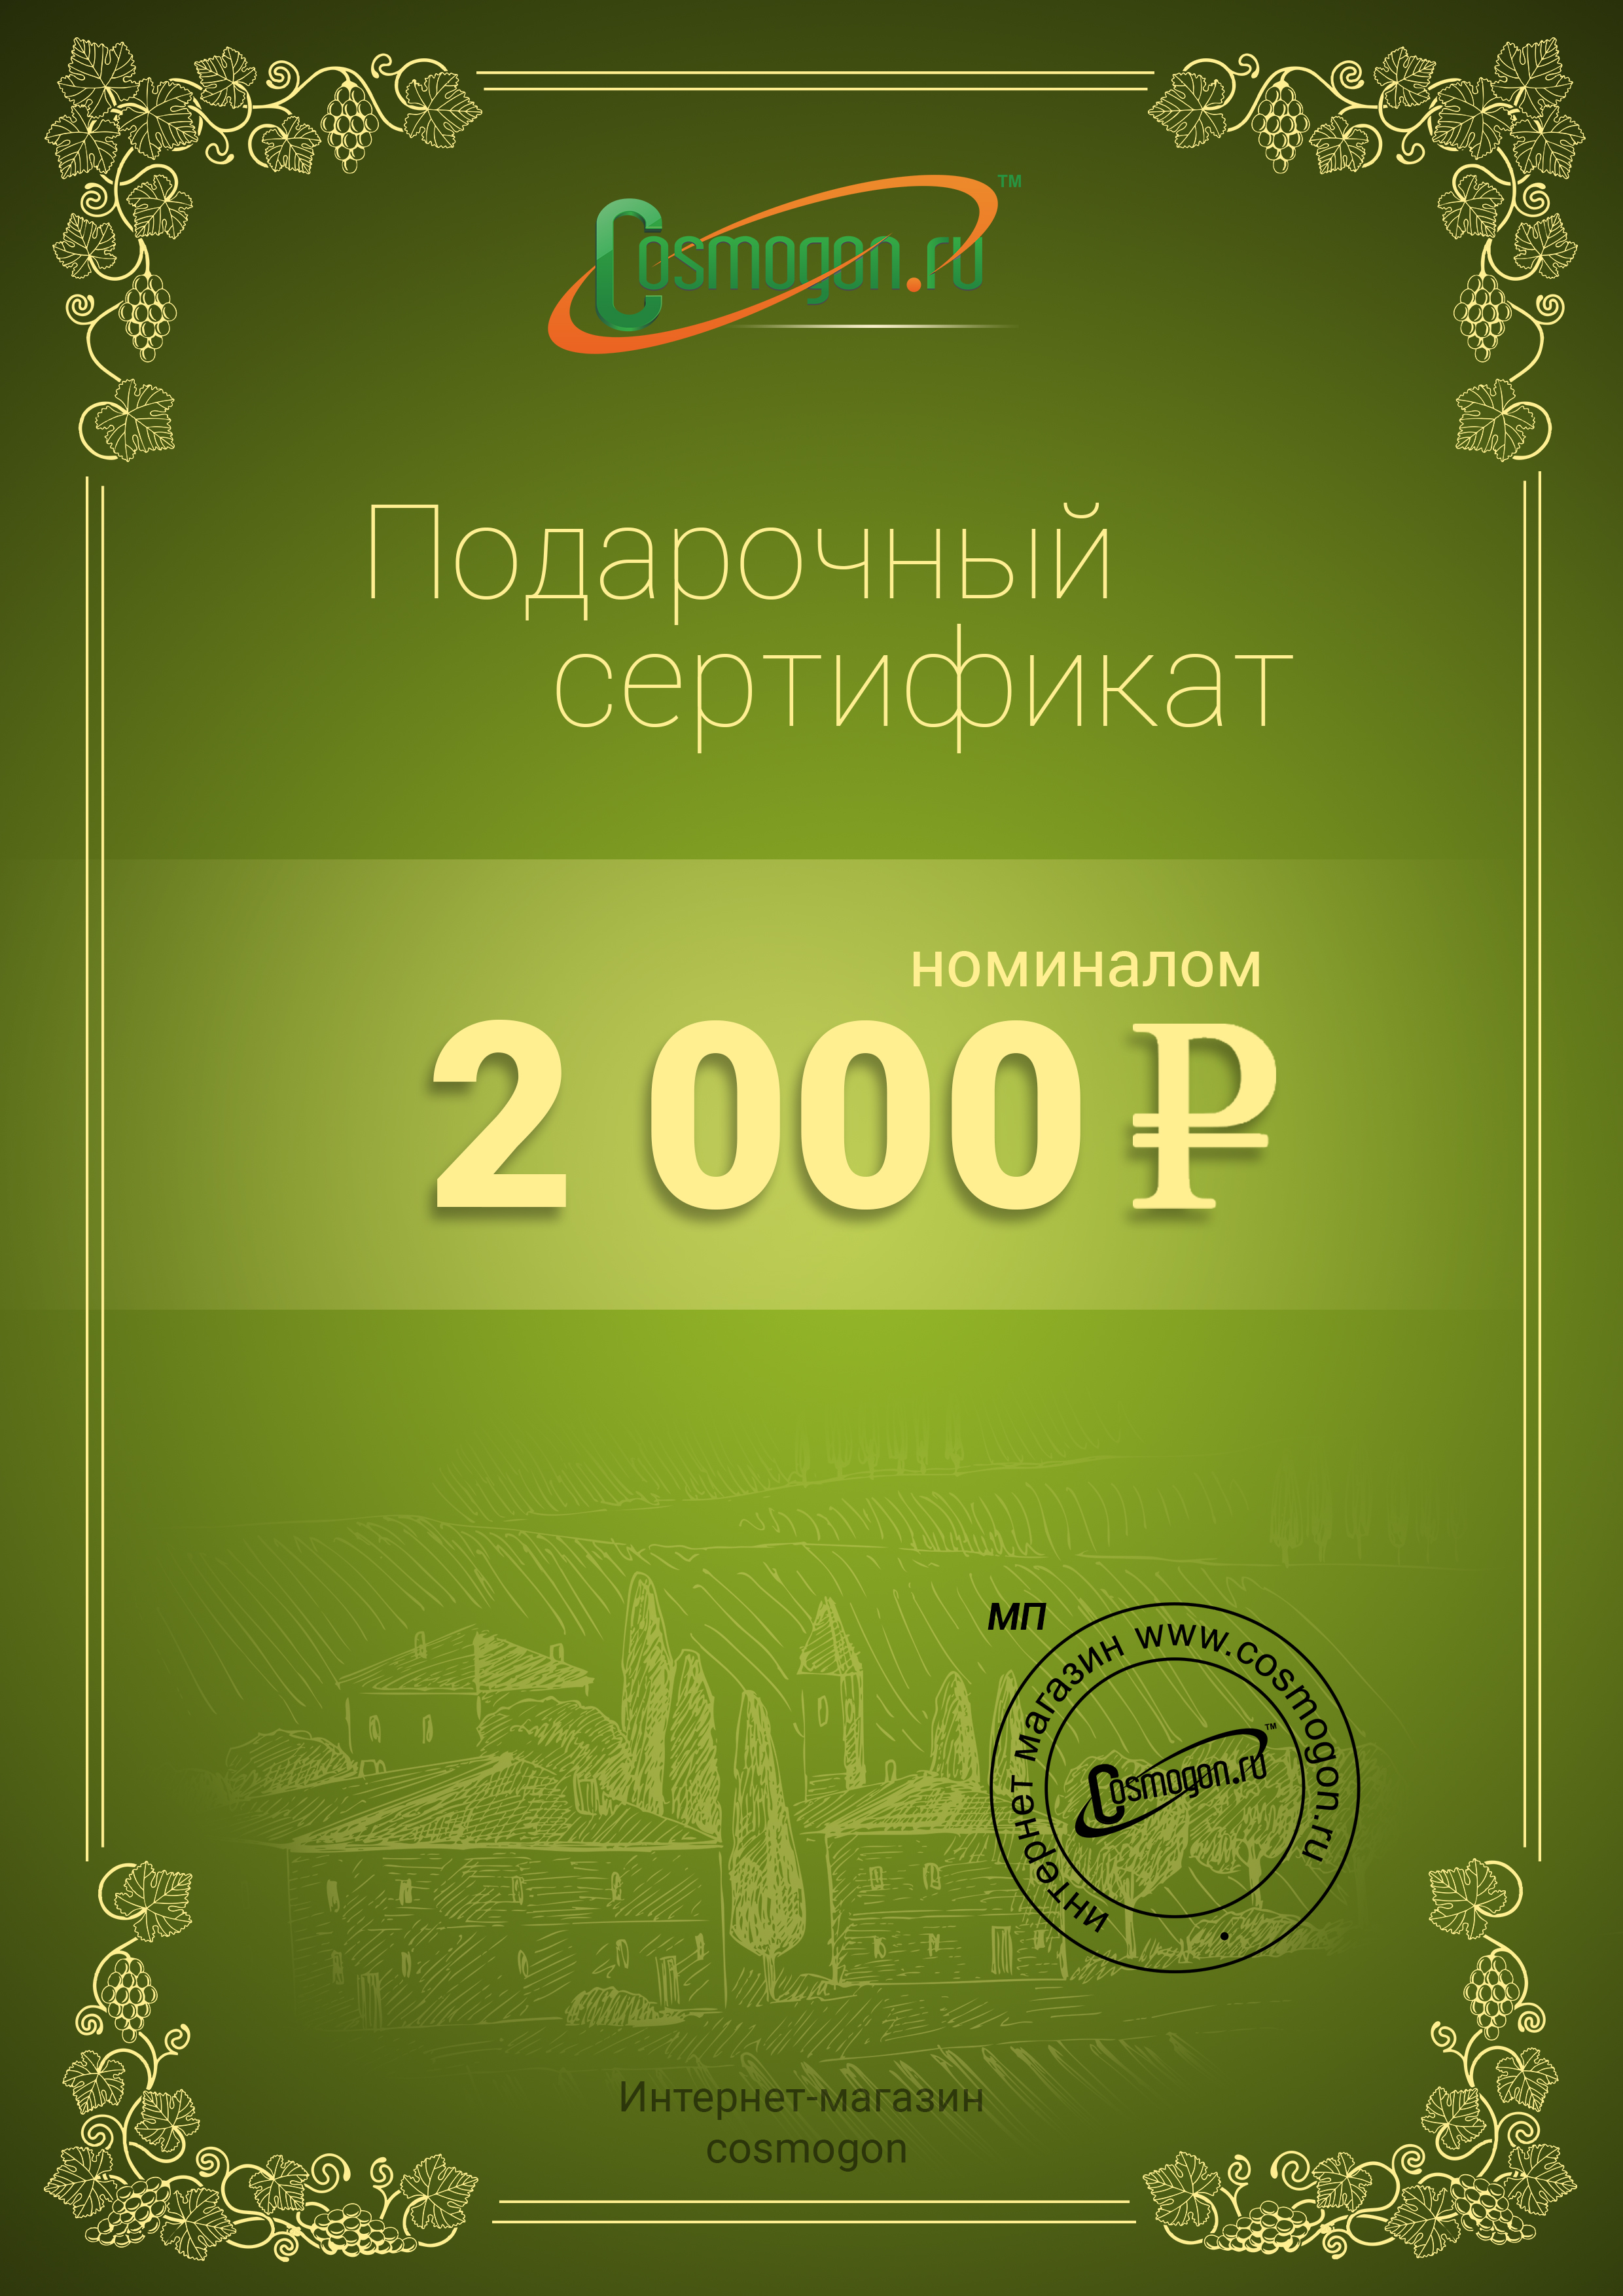 /products/podarochnyy-sertifikat-na-2000-rubley/